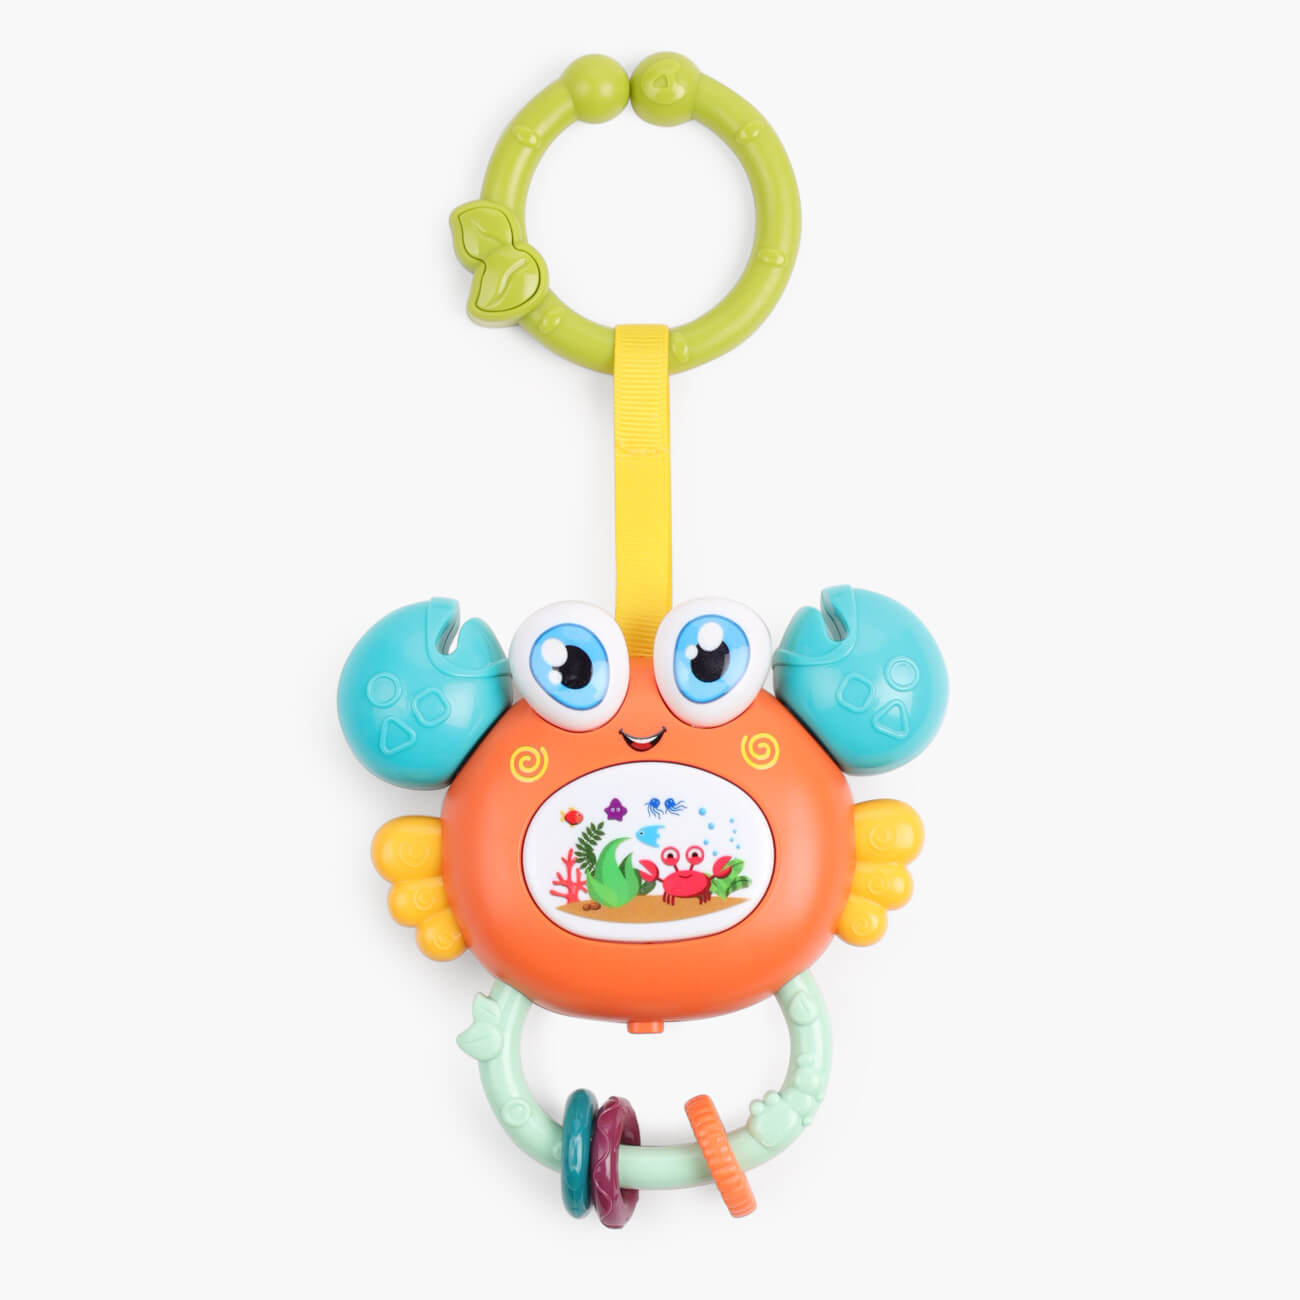 Игрушка развивающая, 11х12 см, музыкальная, пластик, оранжевый, Крабик, Aquatic animals развивающая игрушка ная гусеничка в пакете